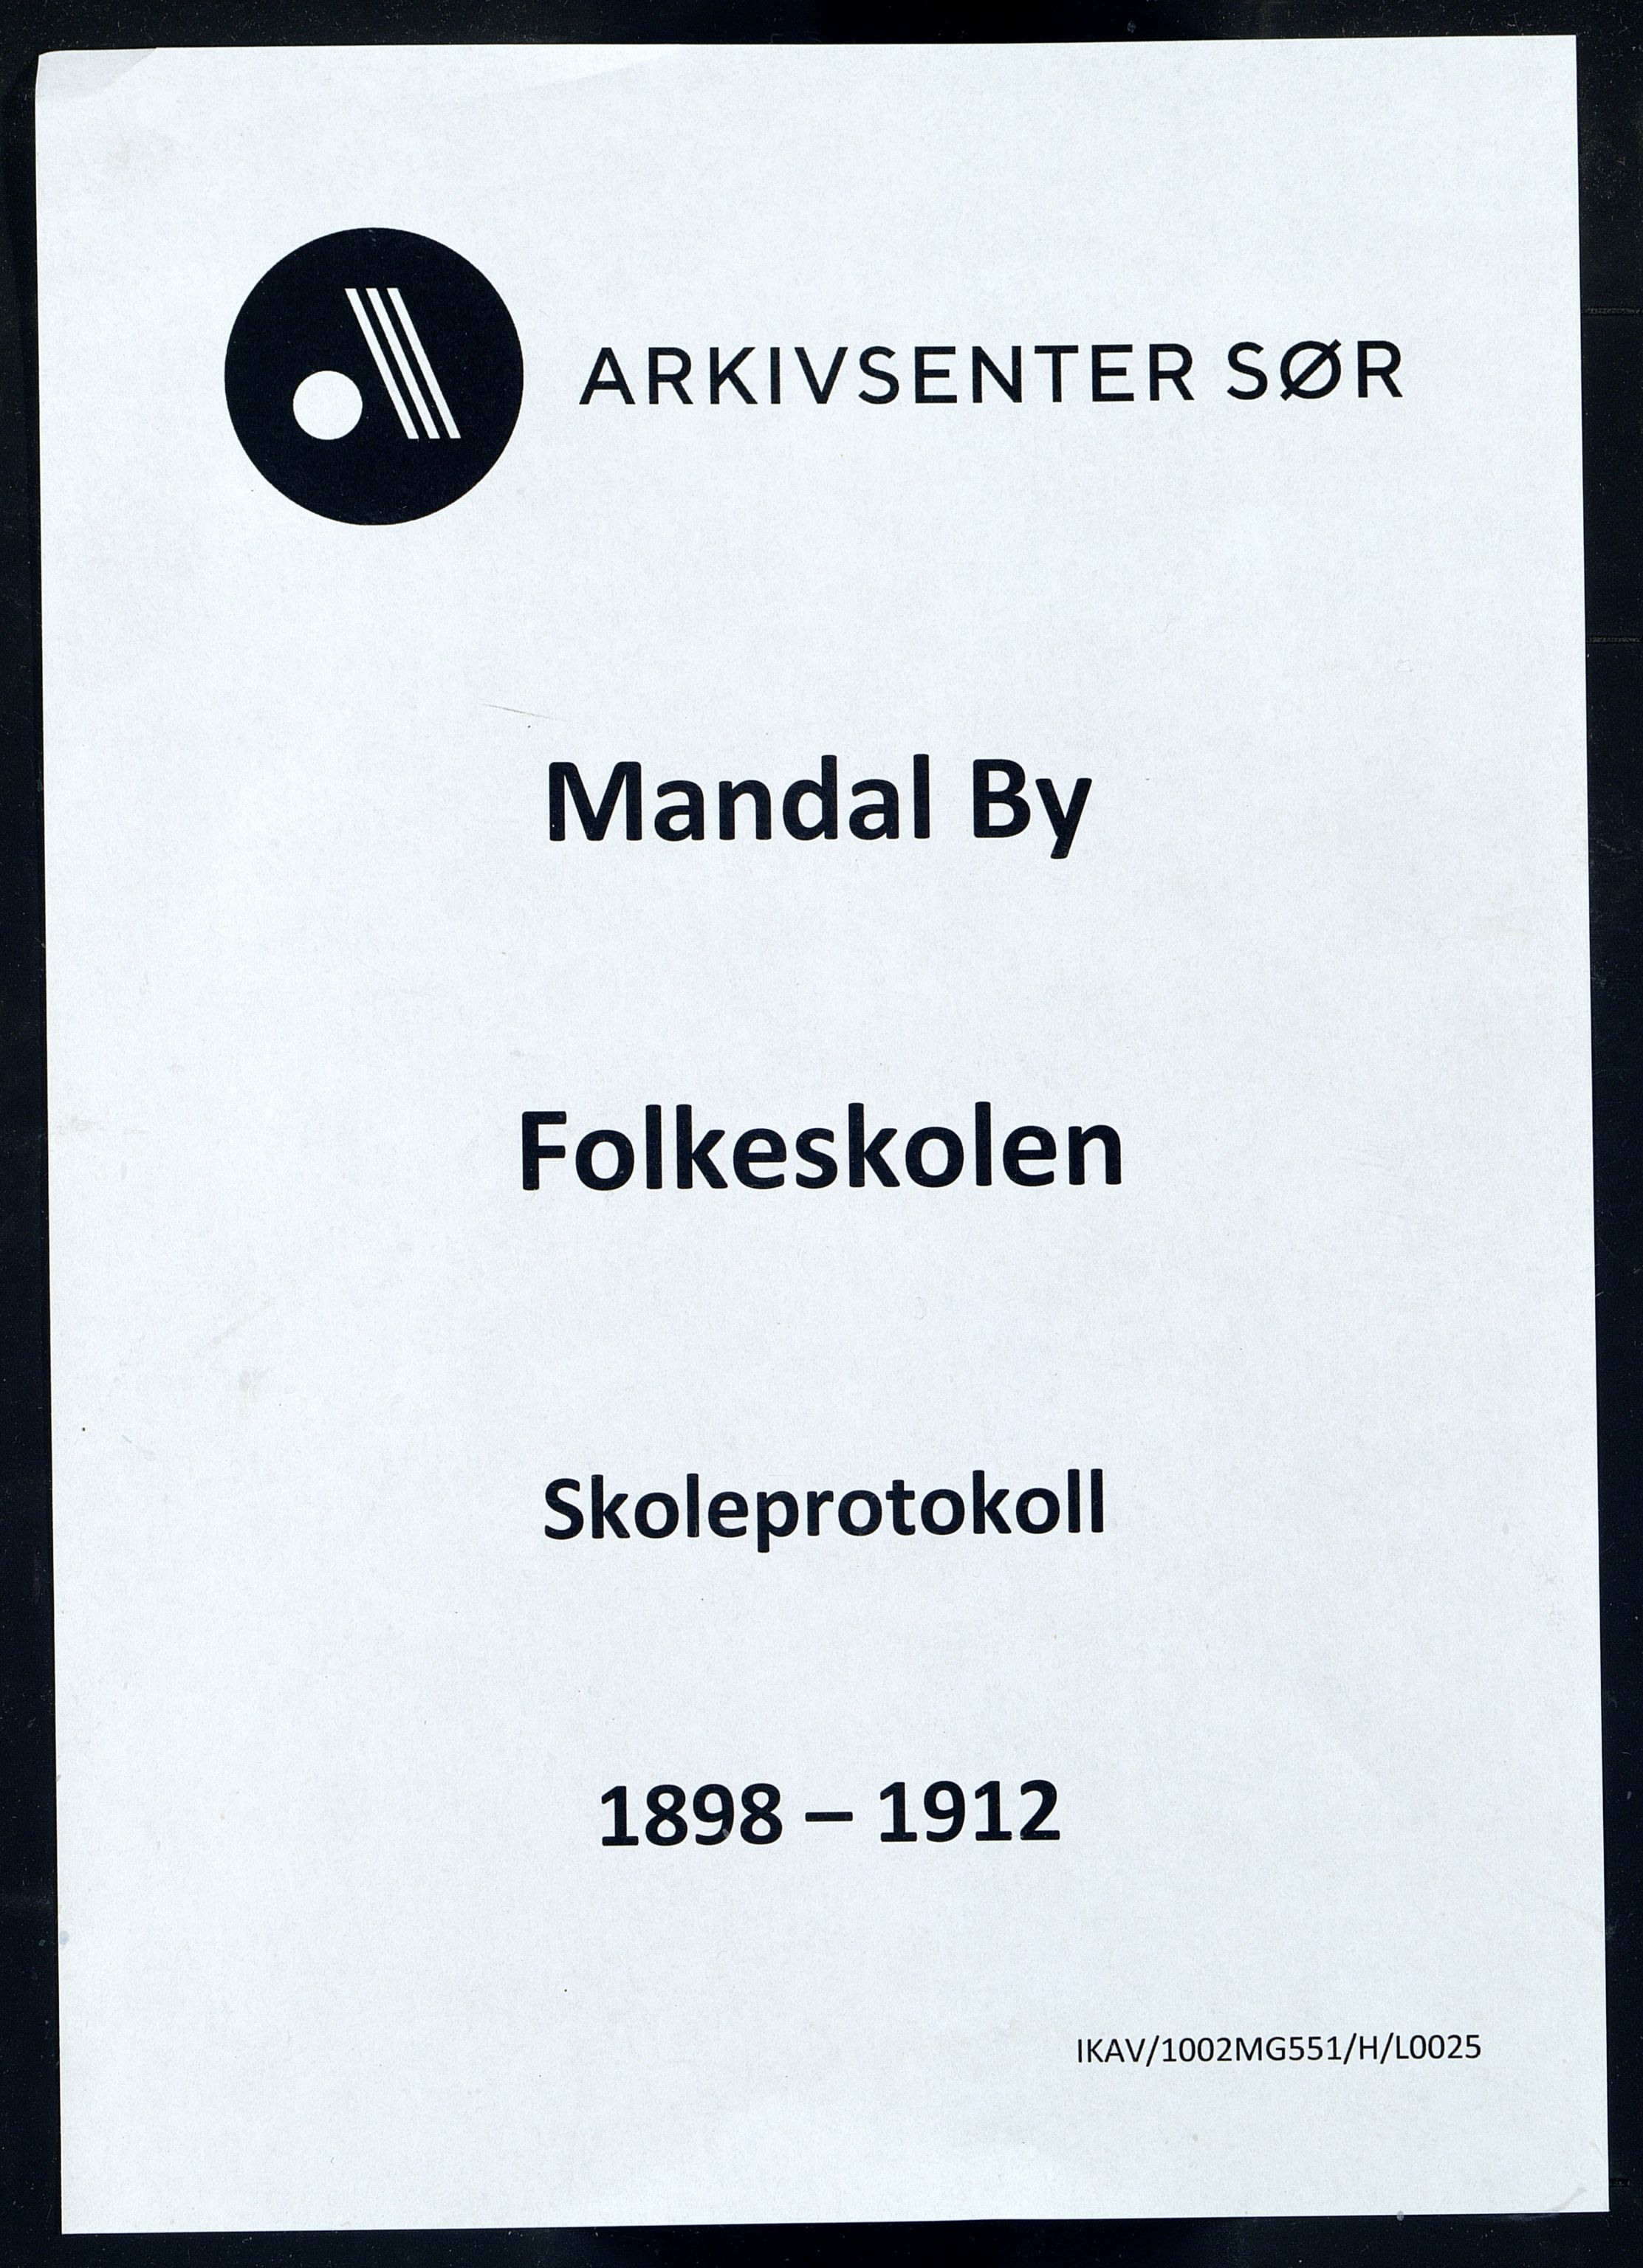 Mandal By - Mandal Allmueskole/Folkeskole/Skole, IKAV/1002MG551/H/L0025: Skoleprotokoll, 1898-1912